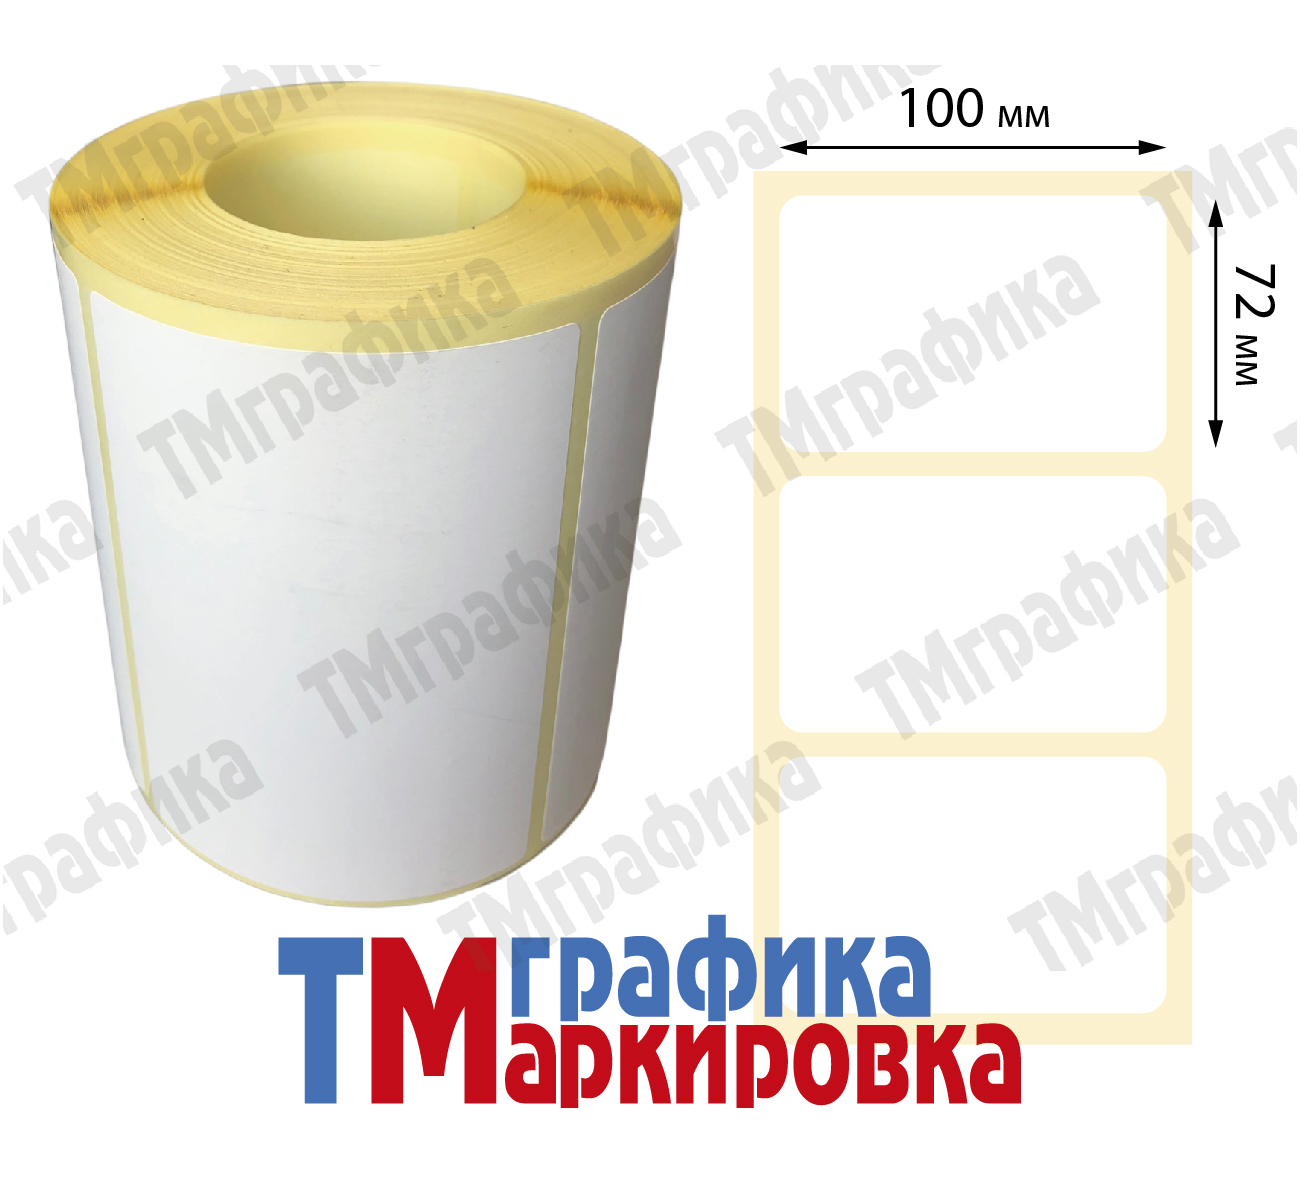 100х72 мм 500 шт. полипропиленовые Термотрансферные этикетки - 810.90 руб.